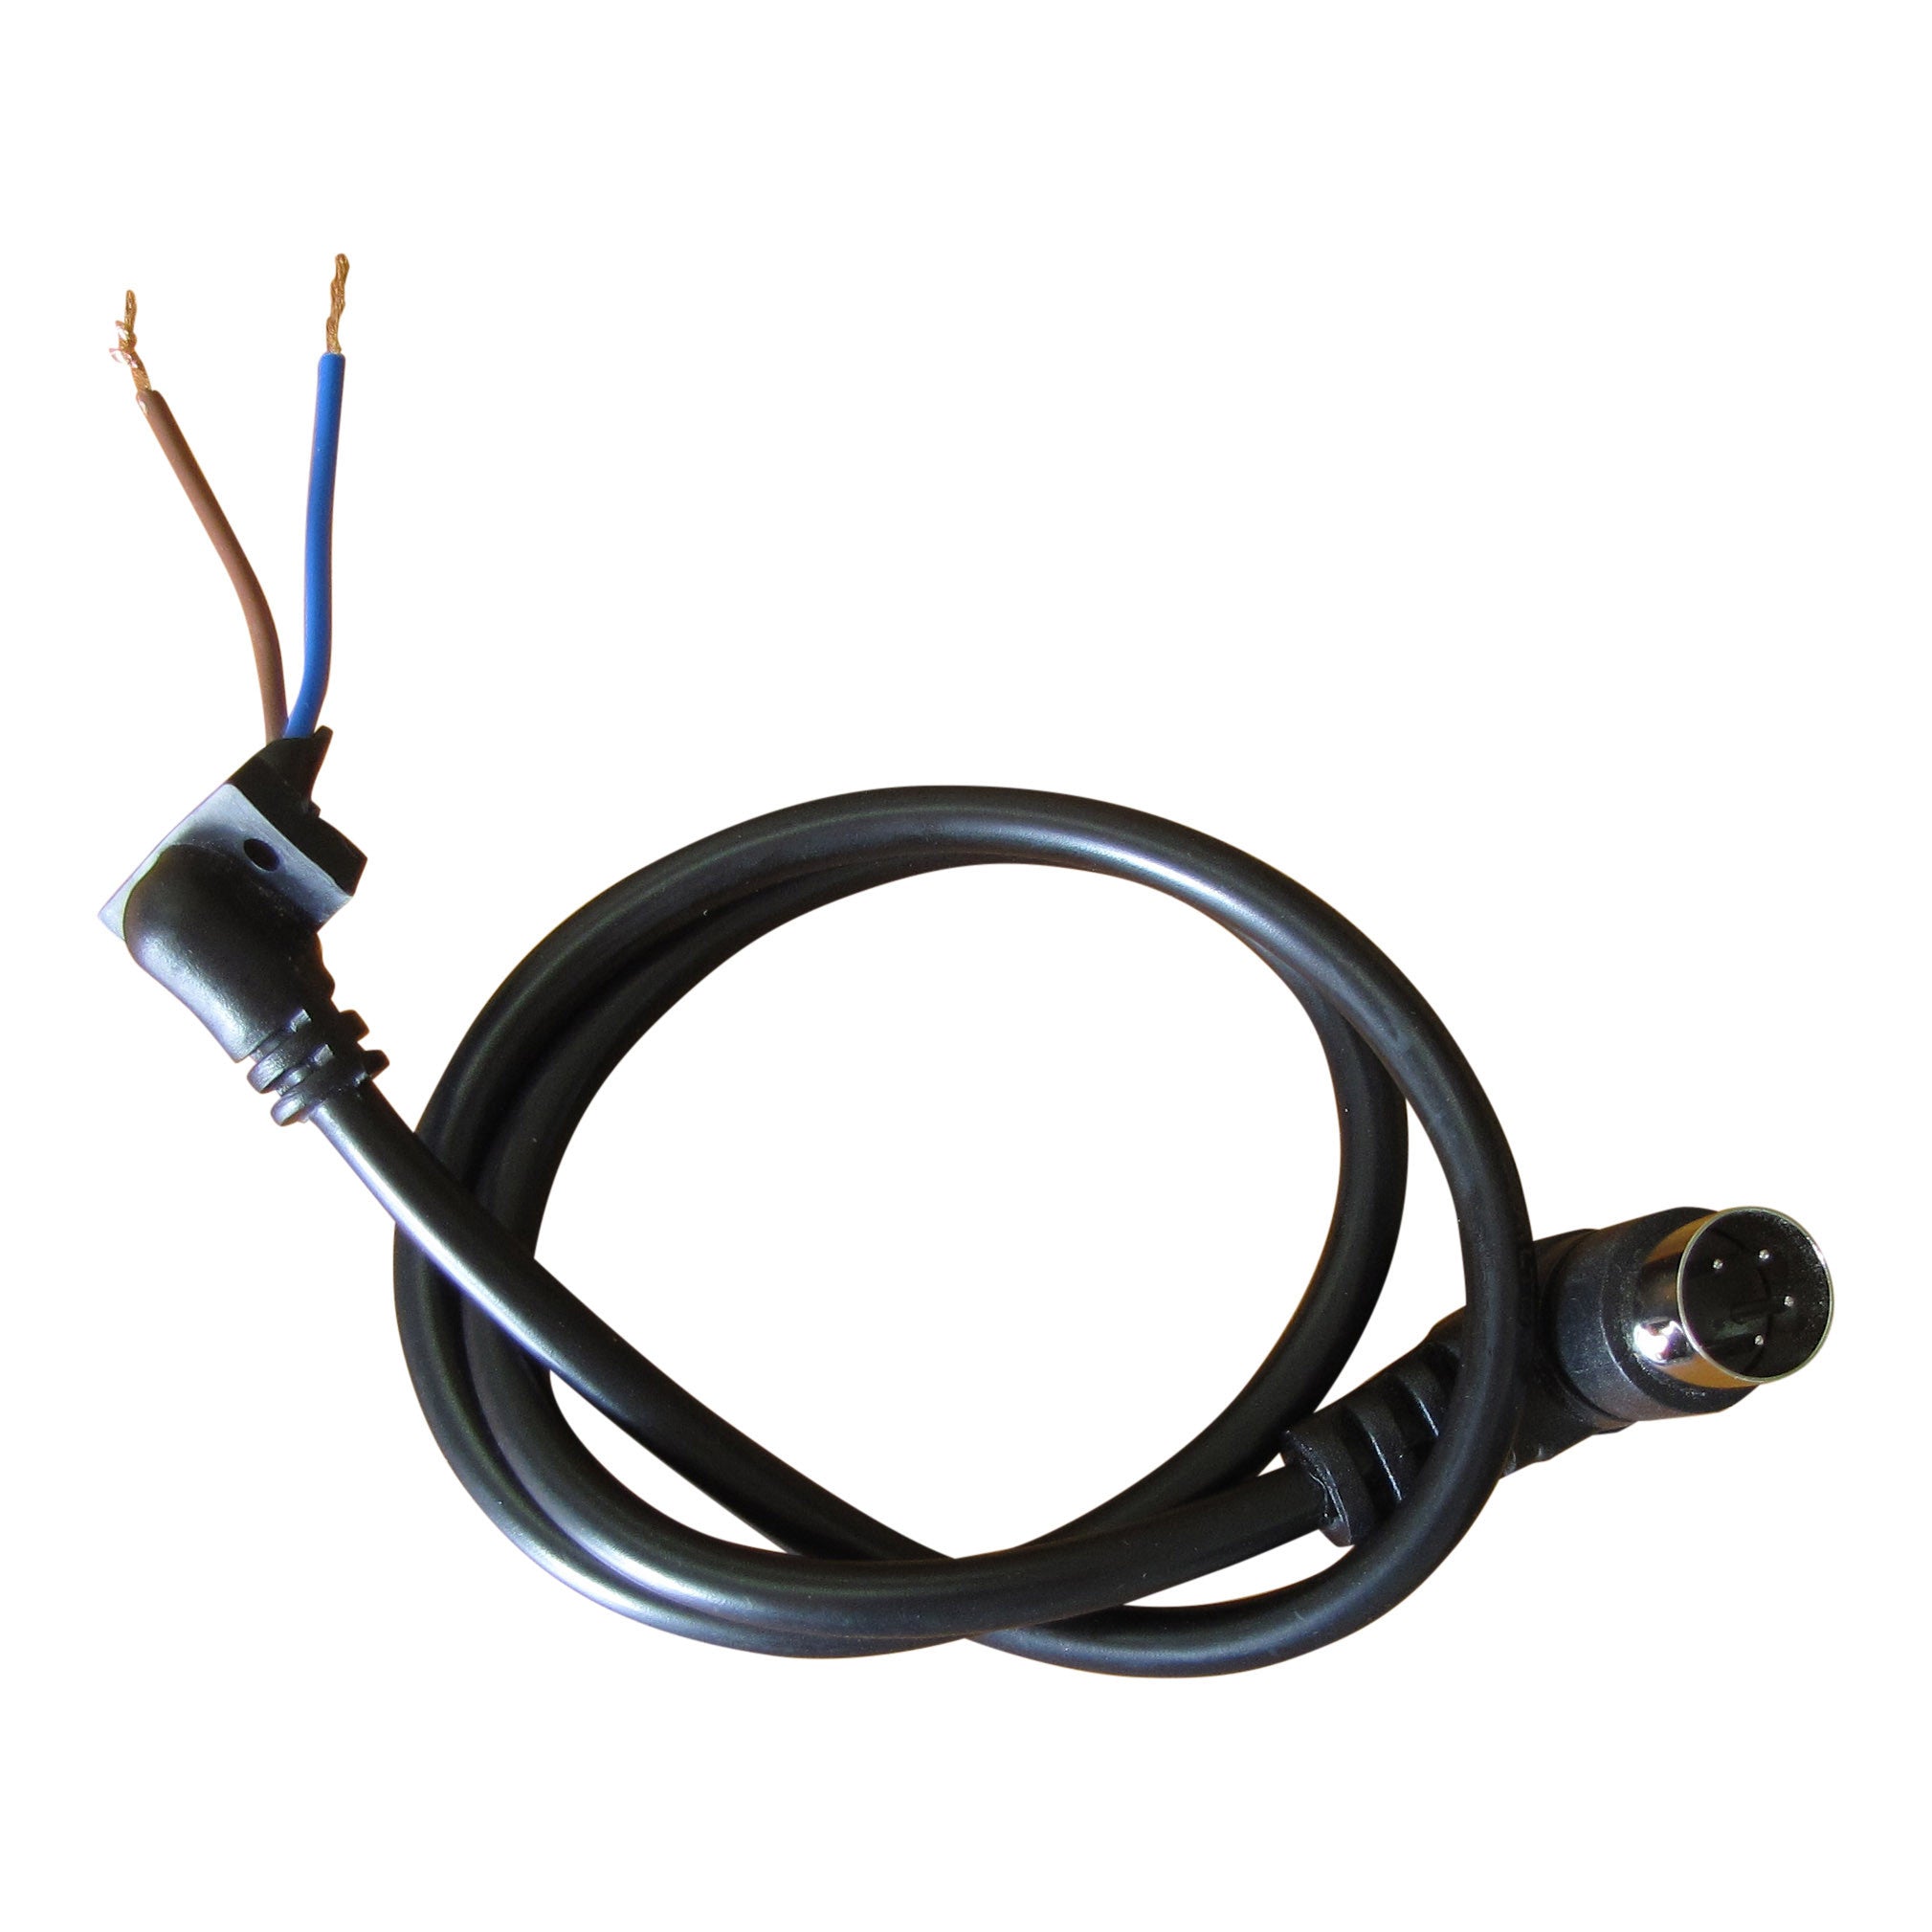 Sistem kontrol kabel genggam untuk aktuator - CSP Product Image